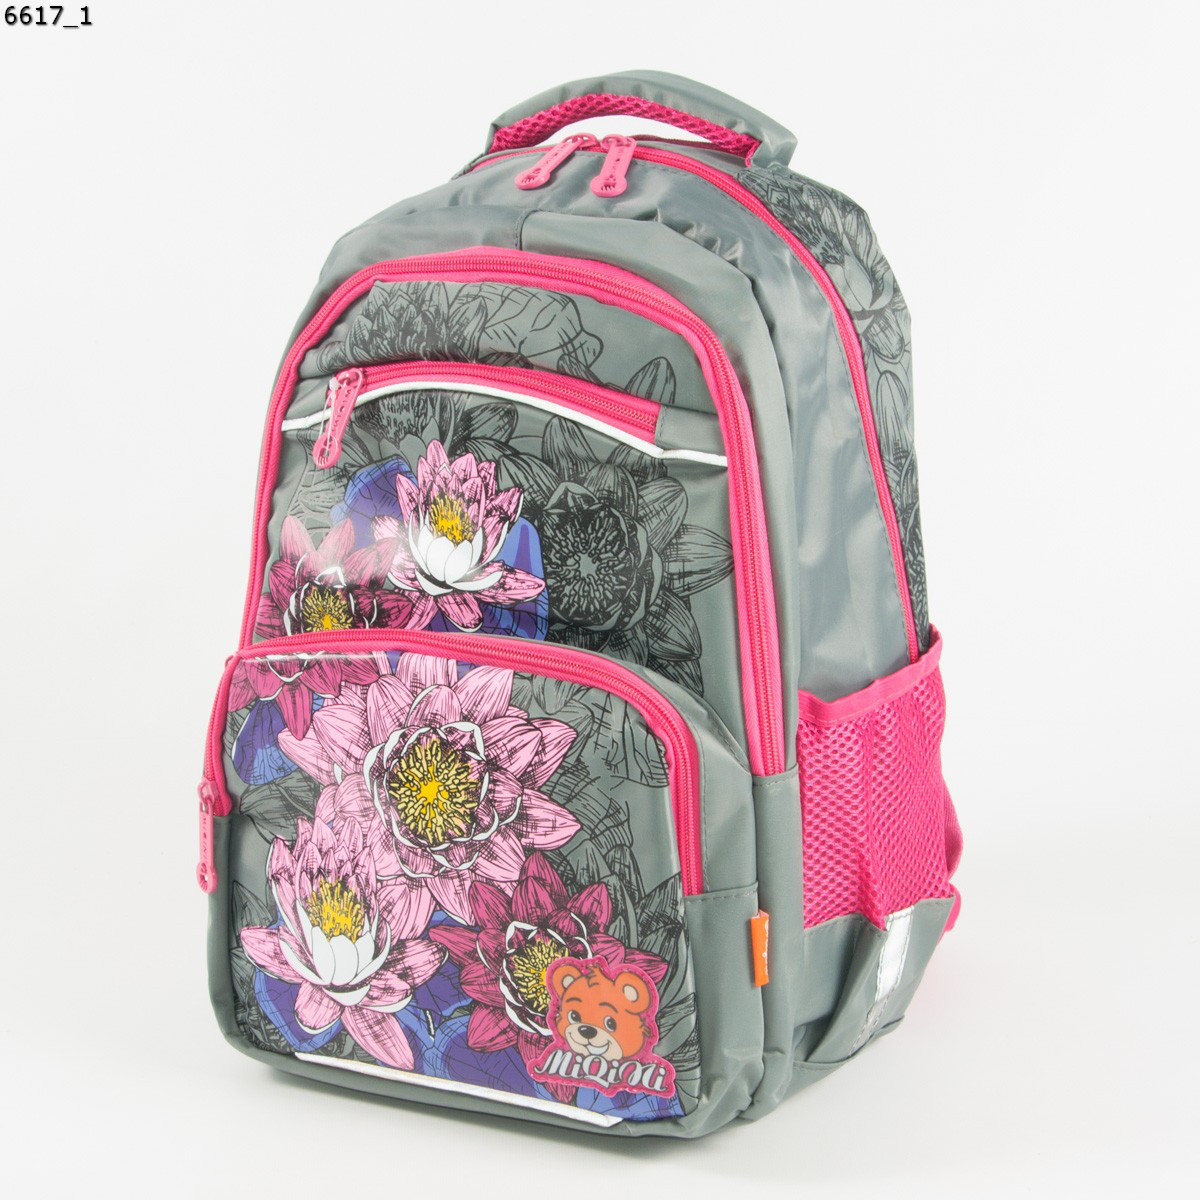 Якісний шкільний рюкзак для дівчаток з квітами - сірий - 6617